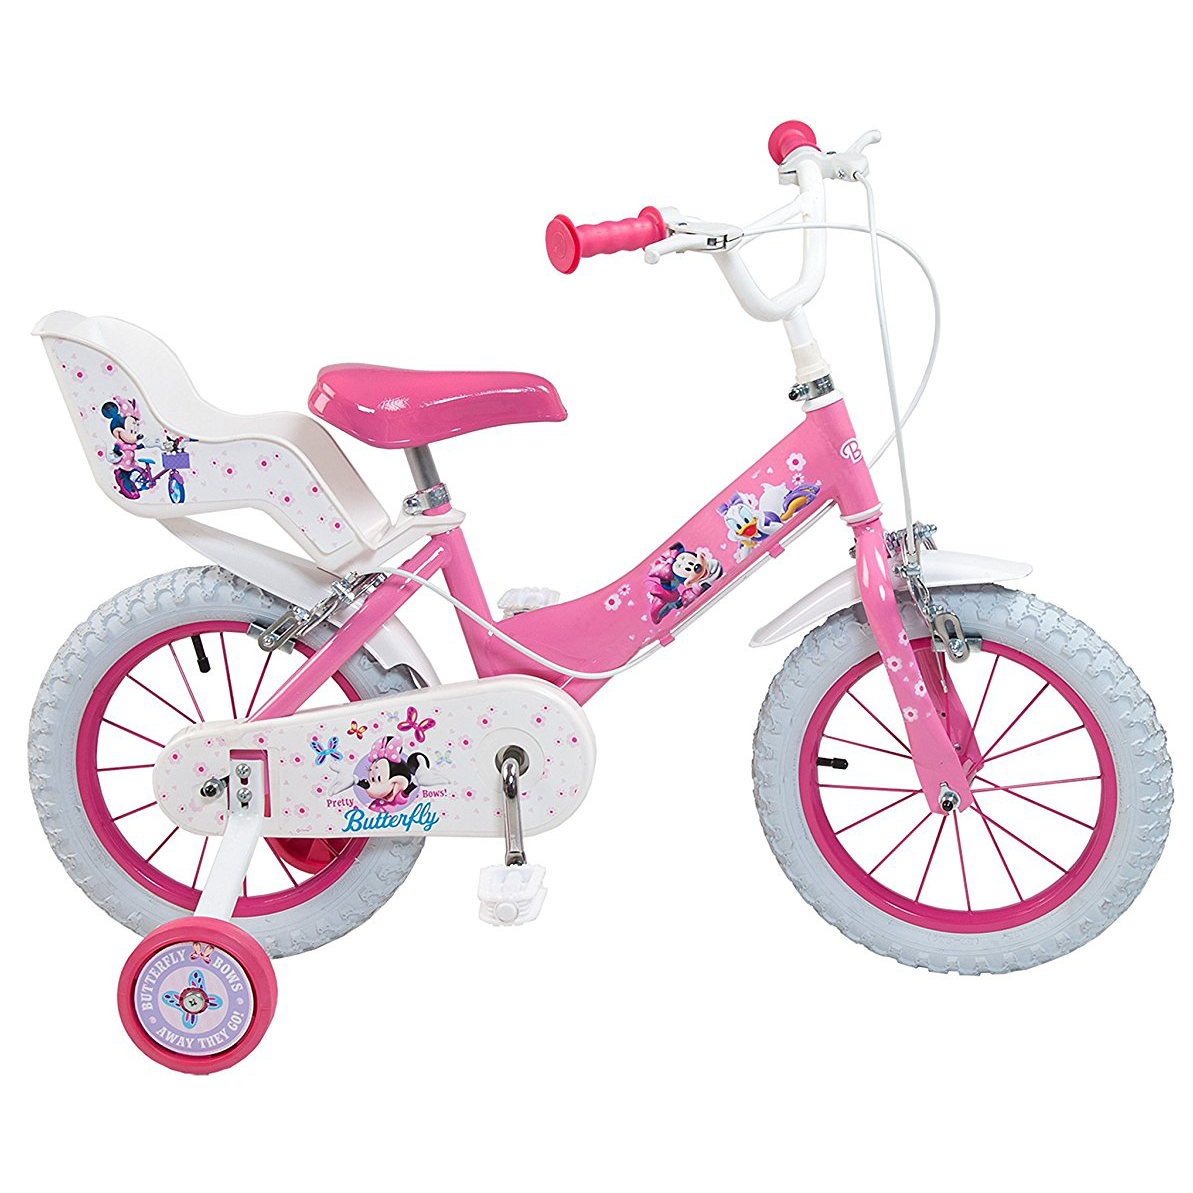 Детский велосипед от 5 лет для девочки. Велосипед детский четырехколесный от 4 лет Юпитер. Т451642 детский велосипед четырехколесный Tech Team "12" дюймов. Велосипед для девочки. Велосипед от 3 лет для девочки.